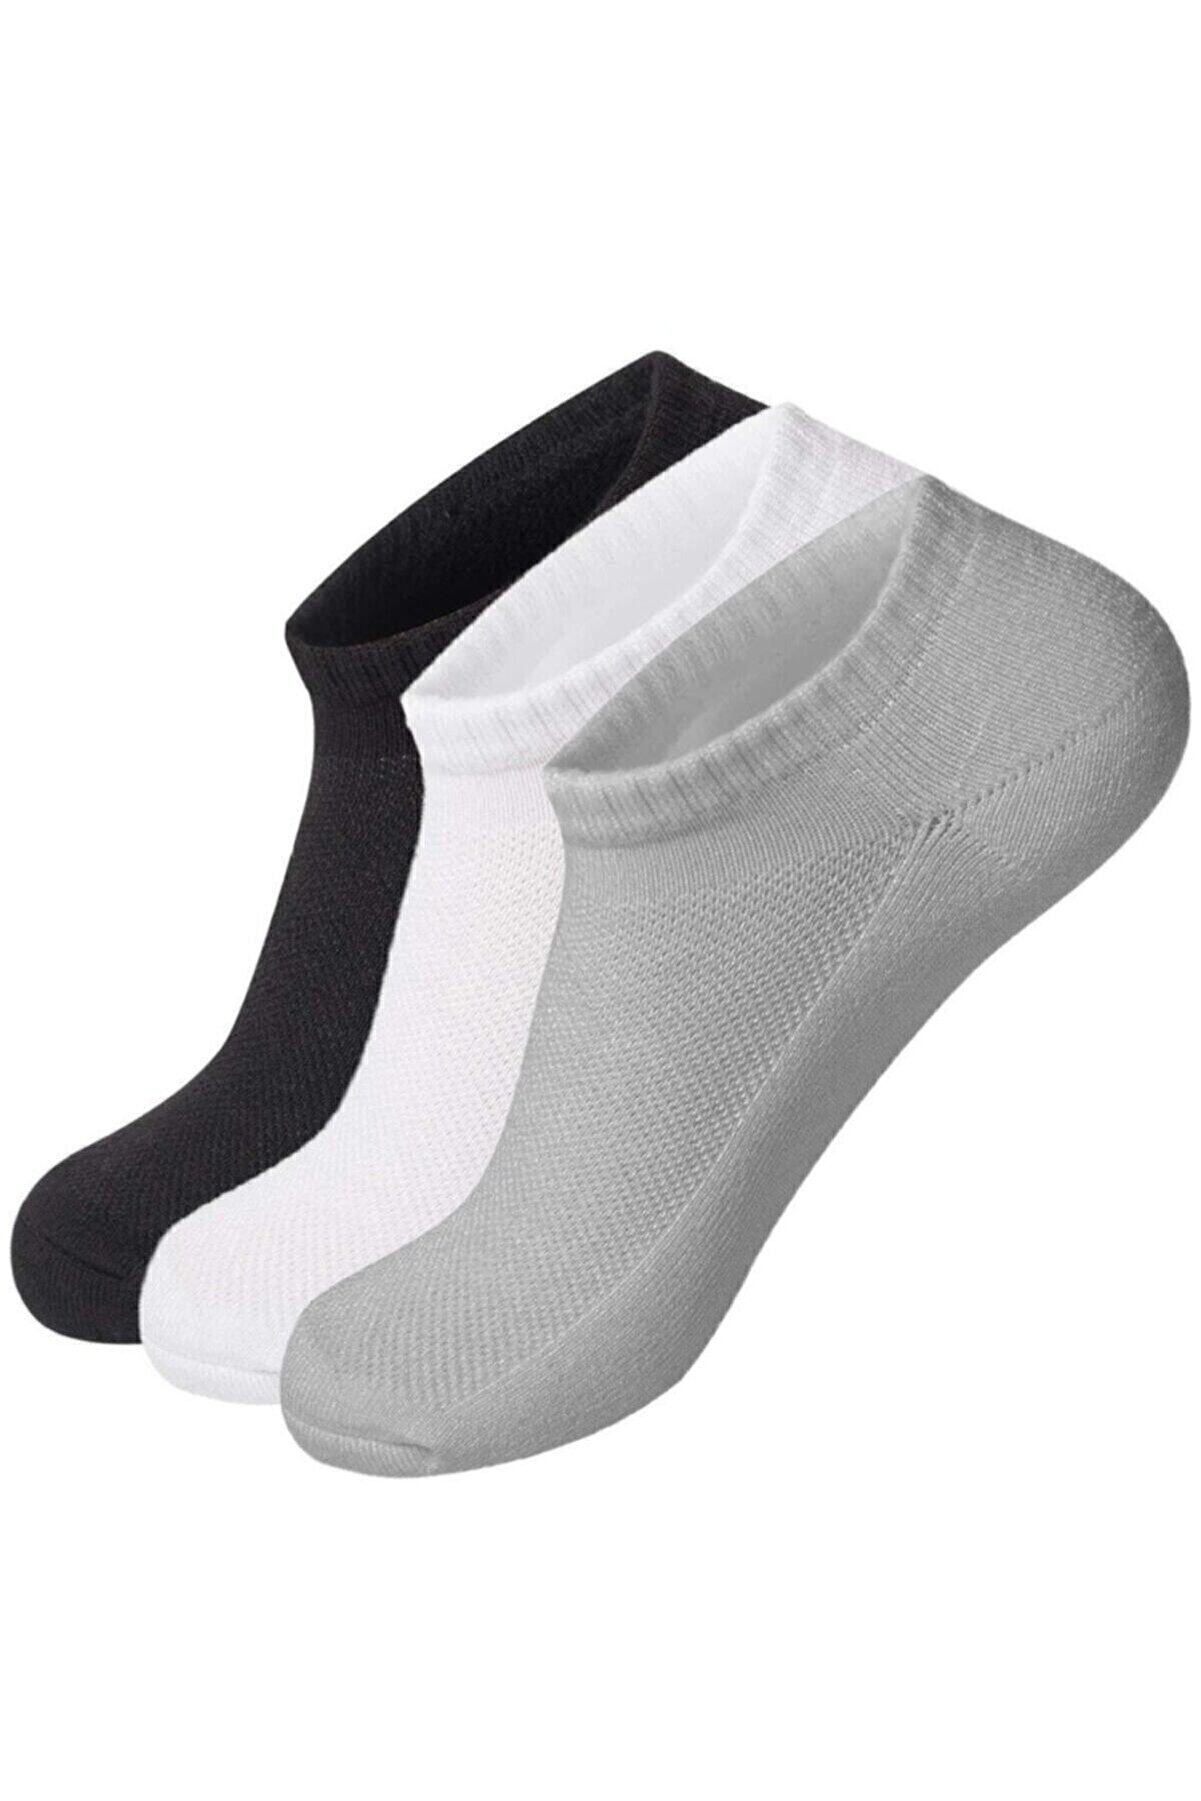 Pearlzon Unisex 4çift Patik Çorap Spor Ayakkabı Kısa Soket Çorabı